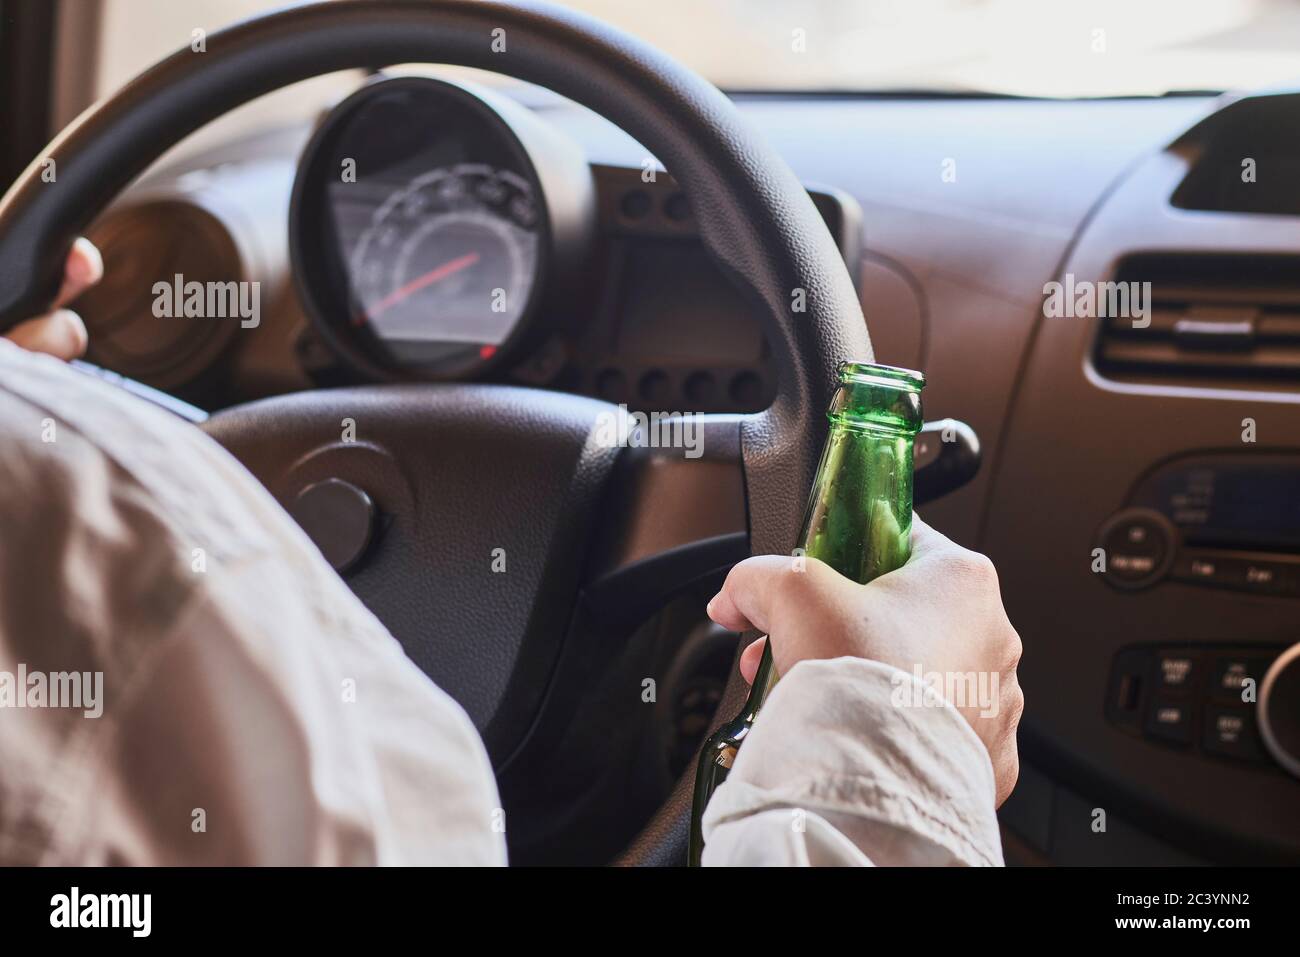 Une femme méconnue boit de la bière en voiture. Concepts de conduite sous influence, conduite en état d'ivresse ou conduite avec facultés affaiblies Banque D'Images